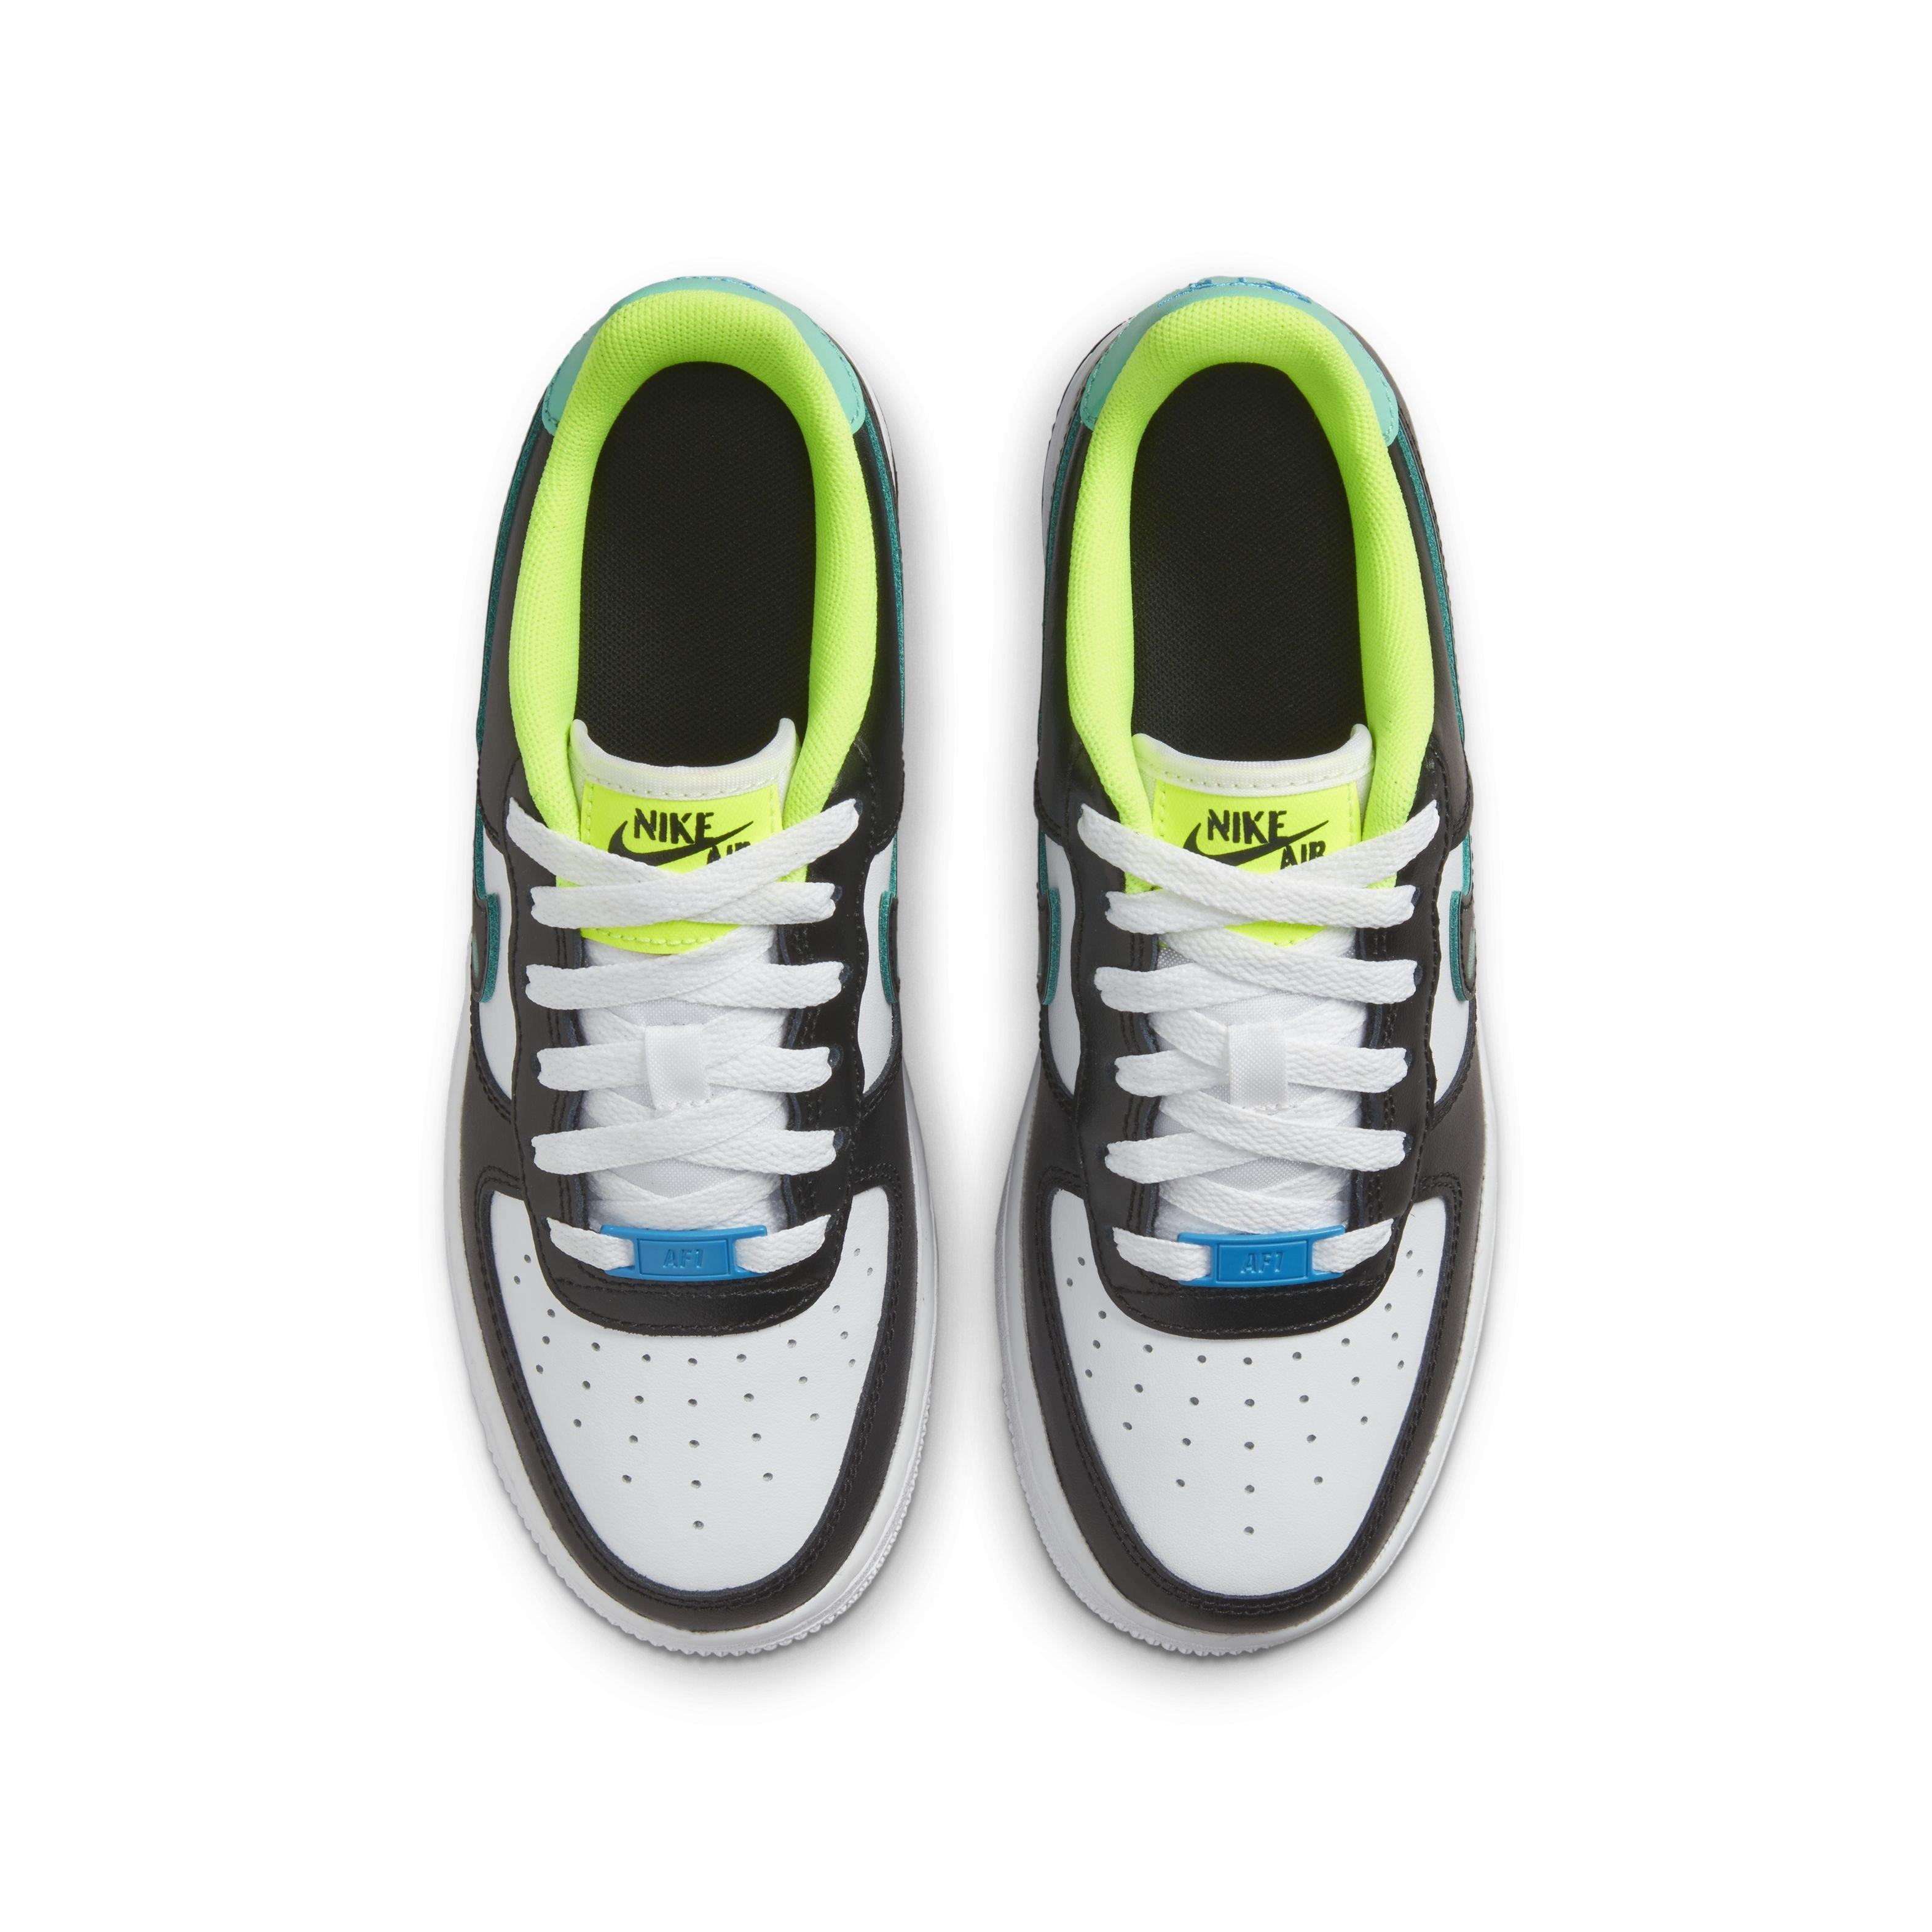 Men's shoes Nike Air Force 1 07 LV8 UV Volt/ Volt-White-White